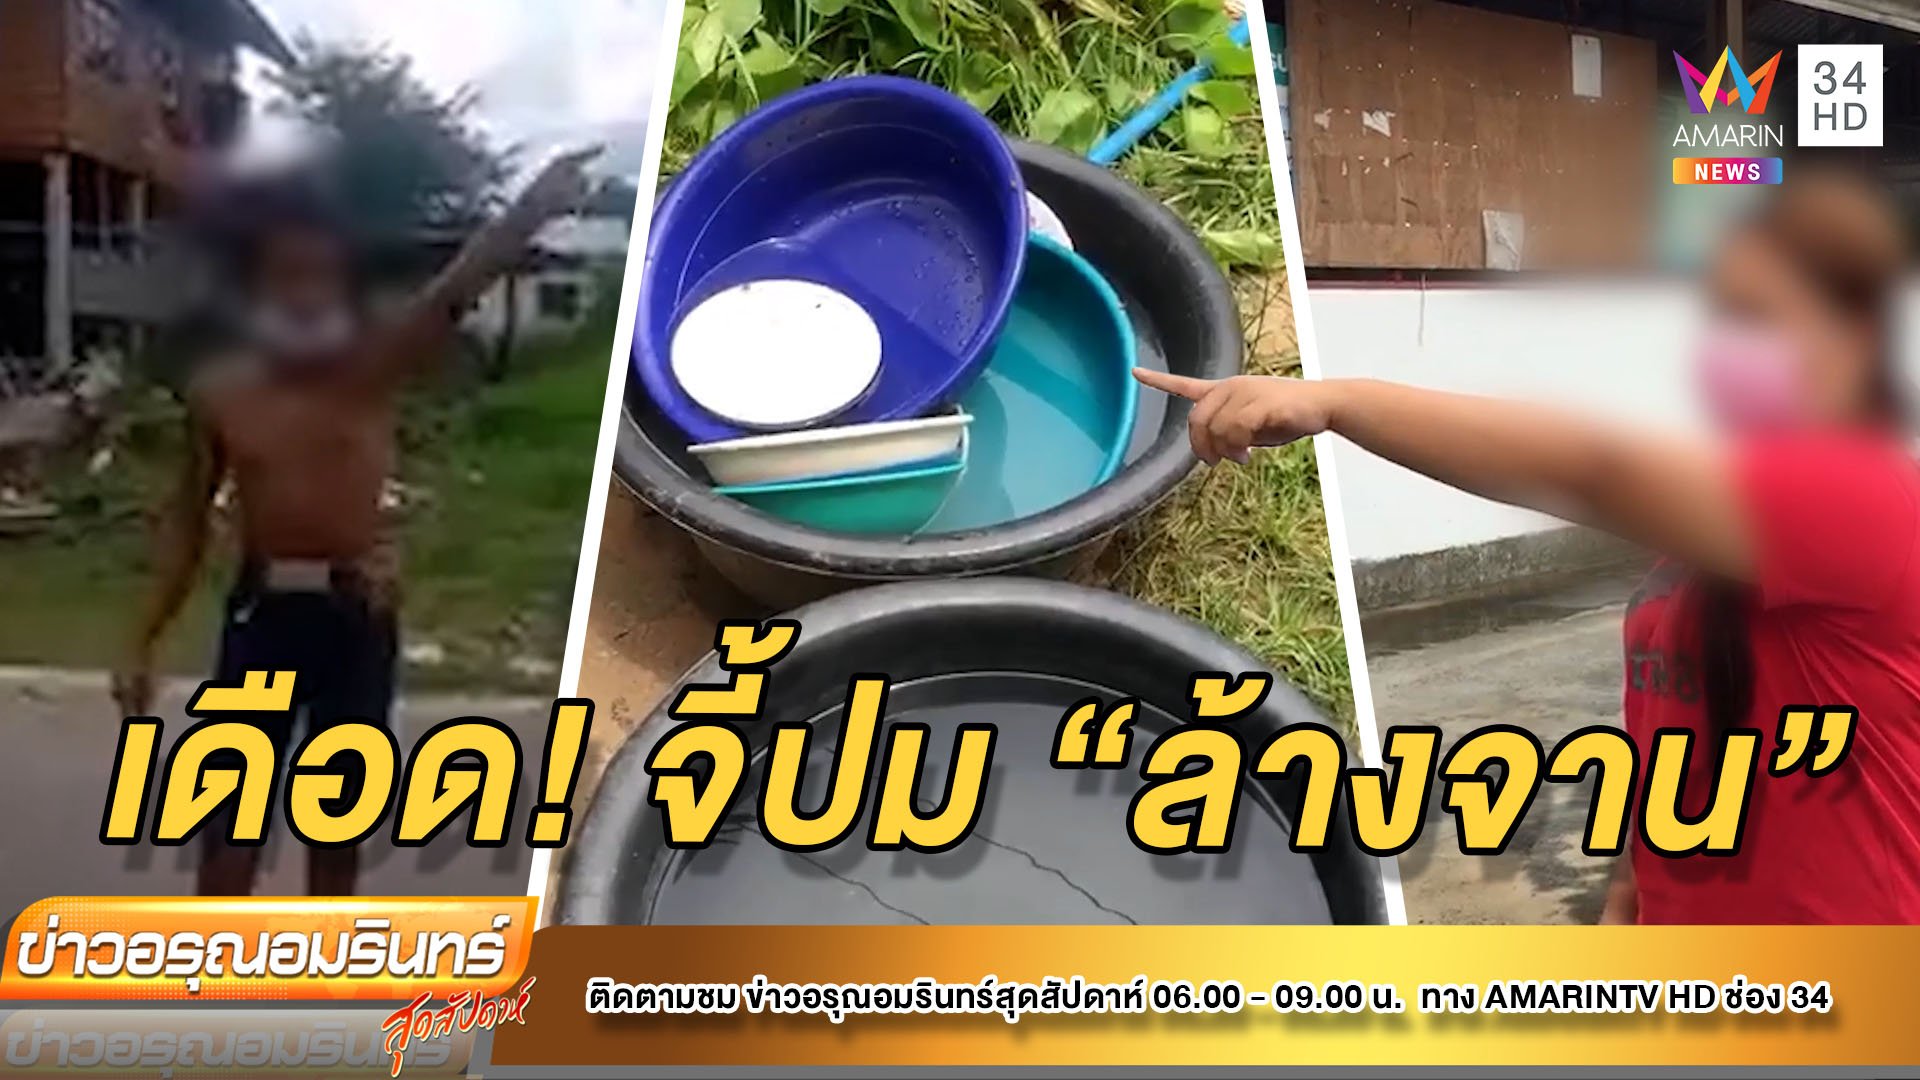 ถูกจี้ปม ‘ล้างจาน’ หนุ่มคลั่งทะเลาะลั่นหมู่บ้าน  | ข่าวอรุณอมรินทร์ สุดสัปดาห์ | 28 ส.ค. 64 | AMARIN TVHD34